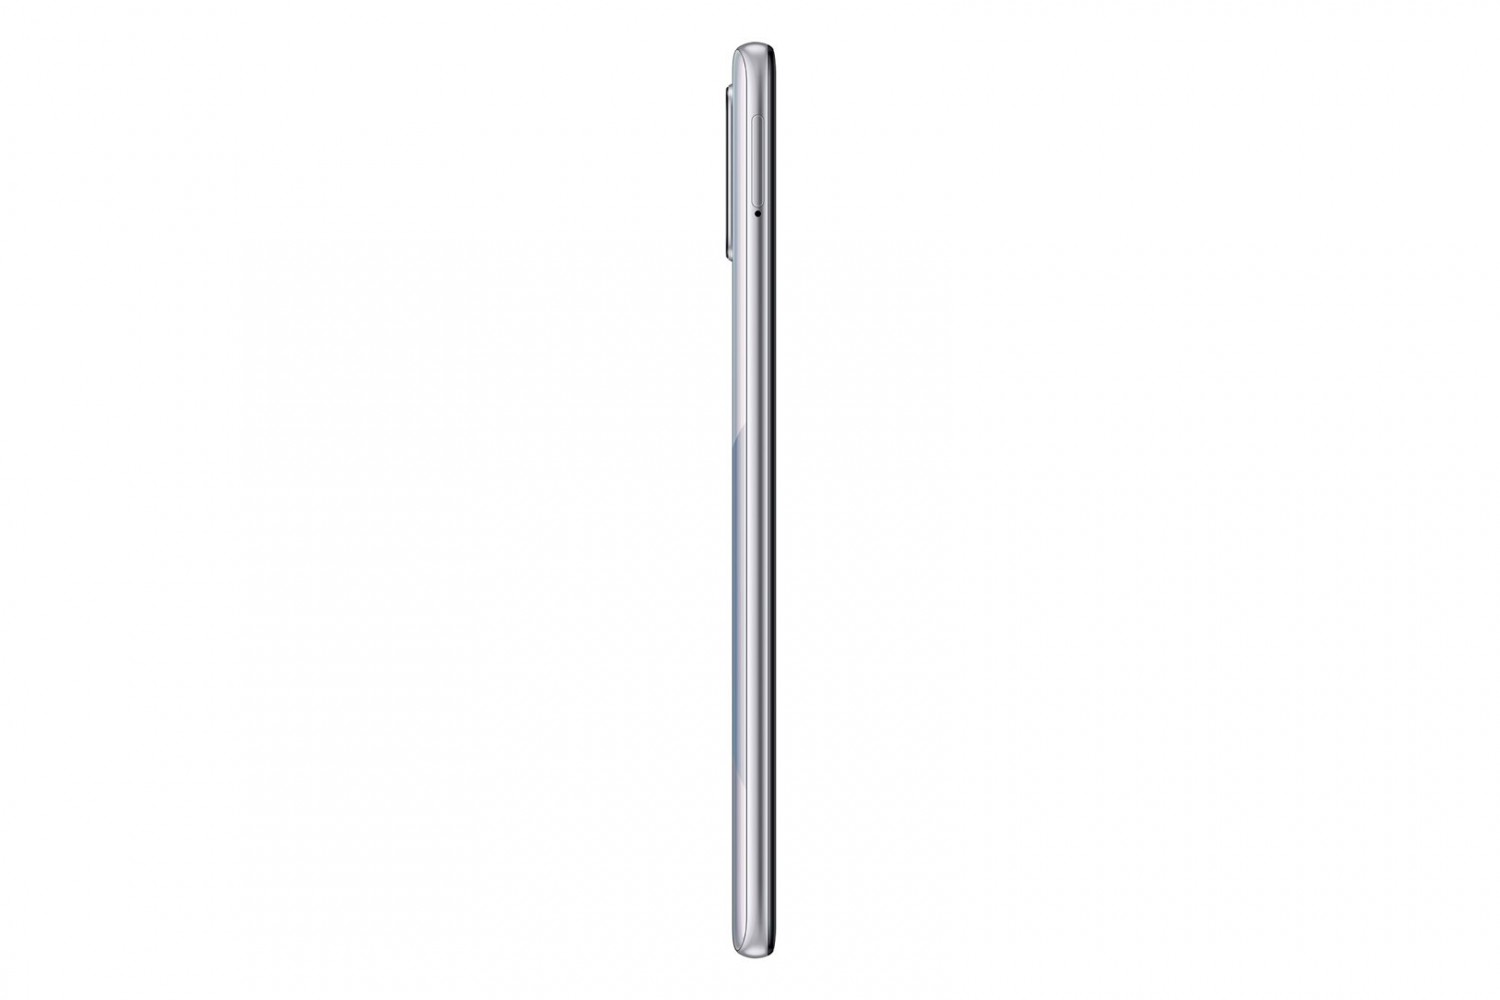 Samsung Galaxy A71 SM-A715F 6GB/128GB stříbrná